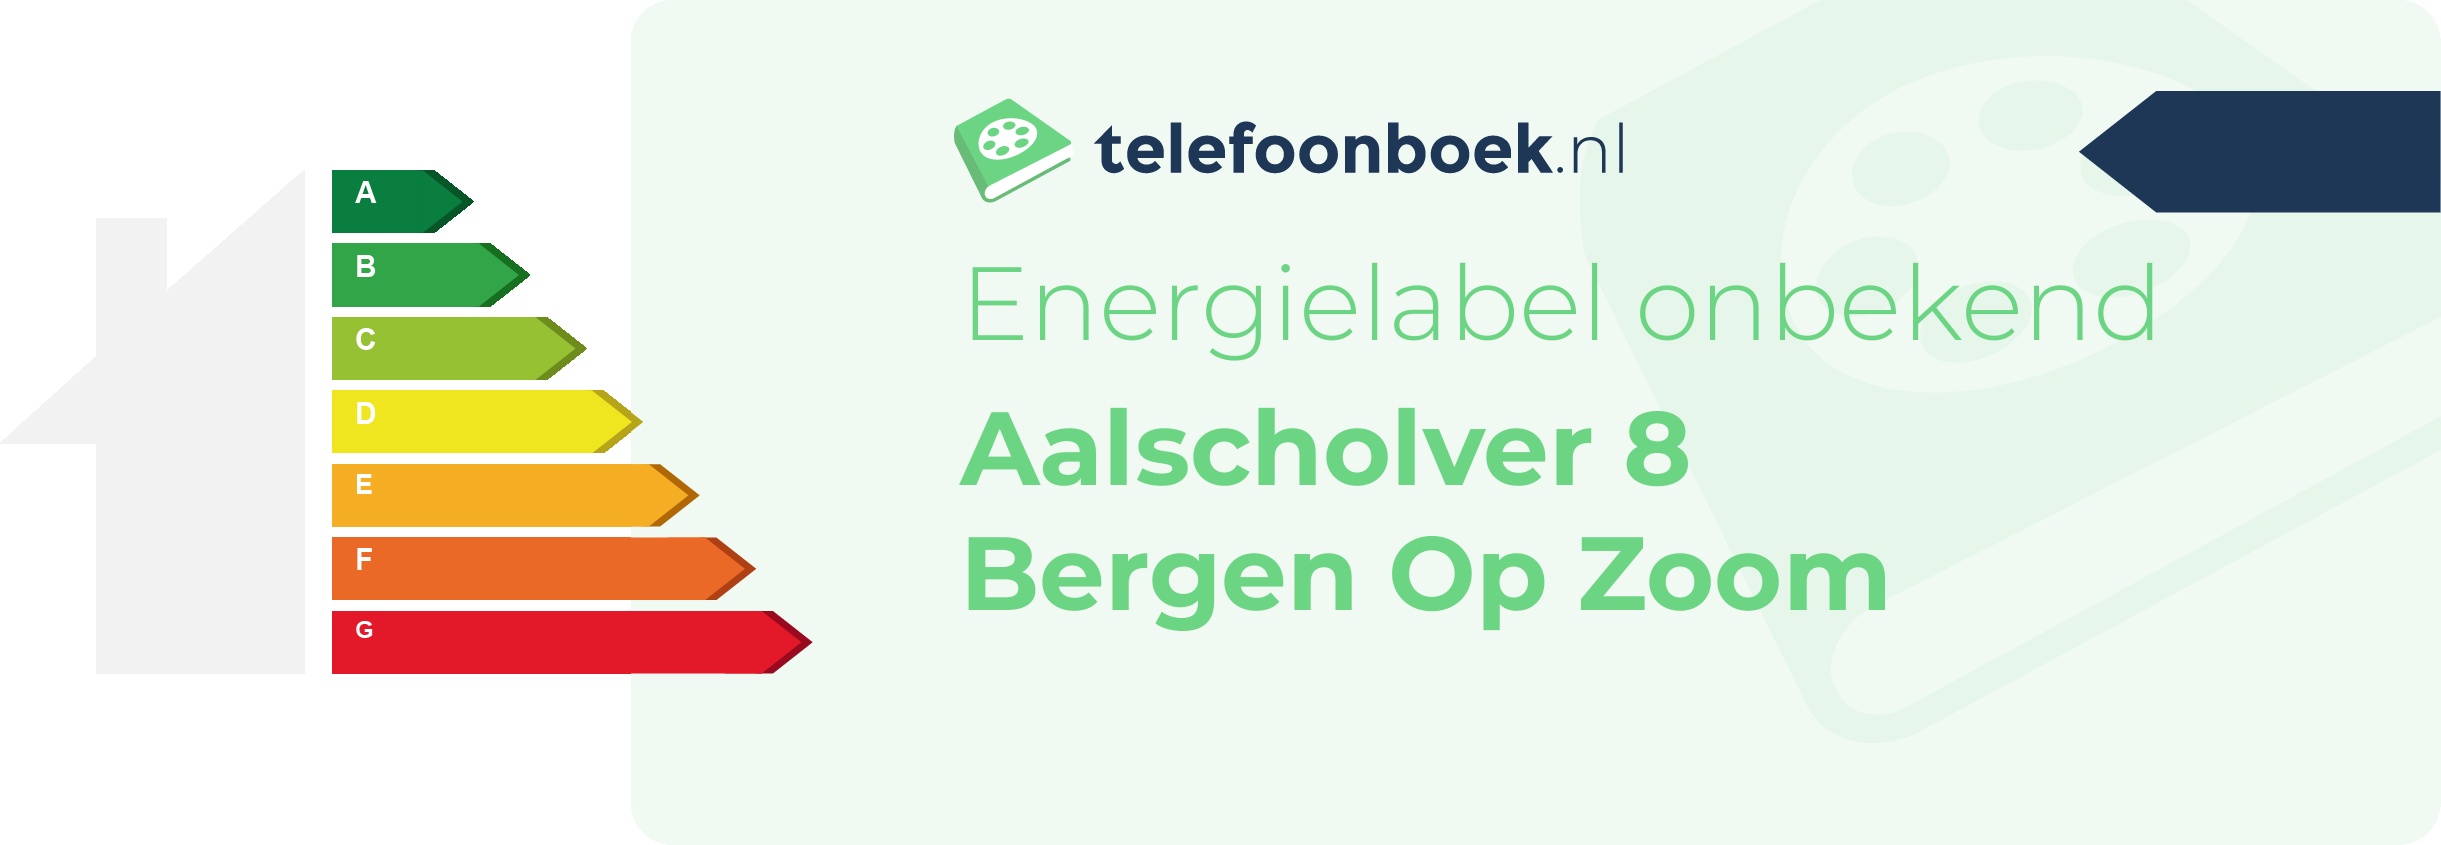 Energielabel Aalscholver 8 Bergen Op Zoom